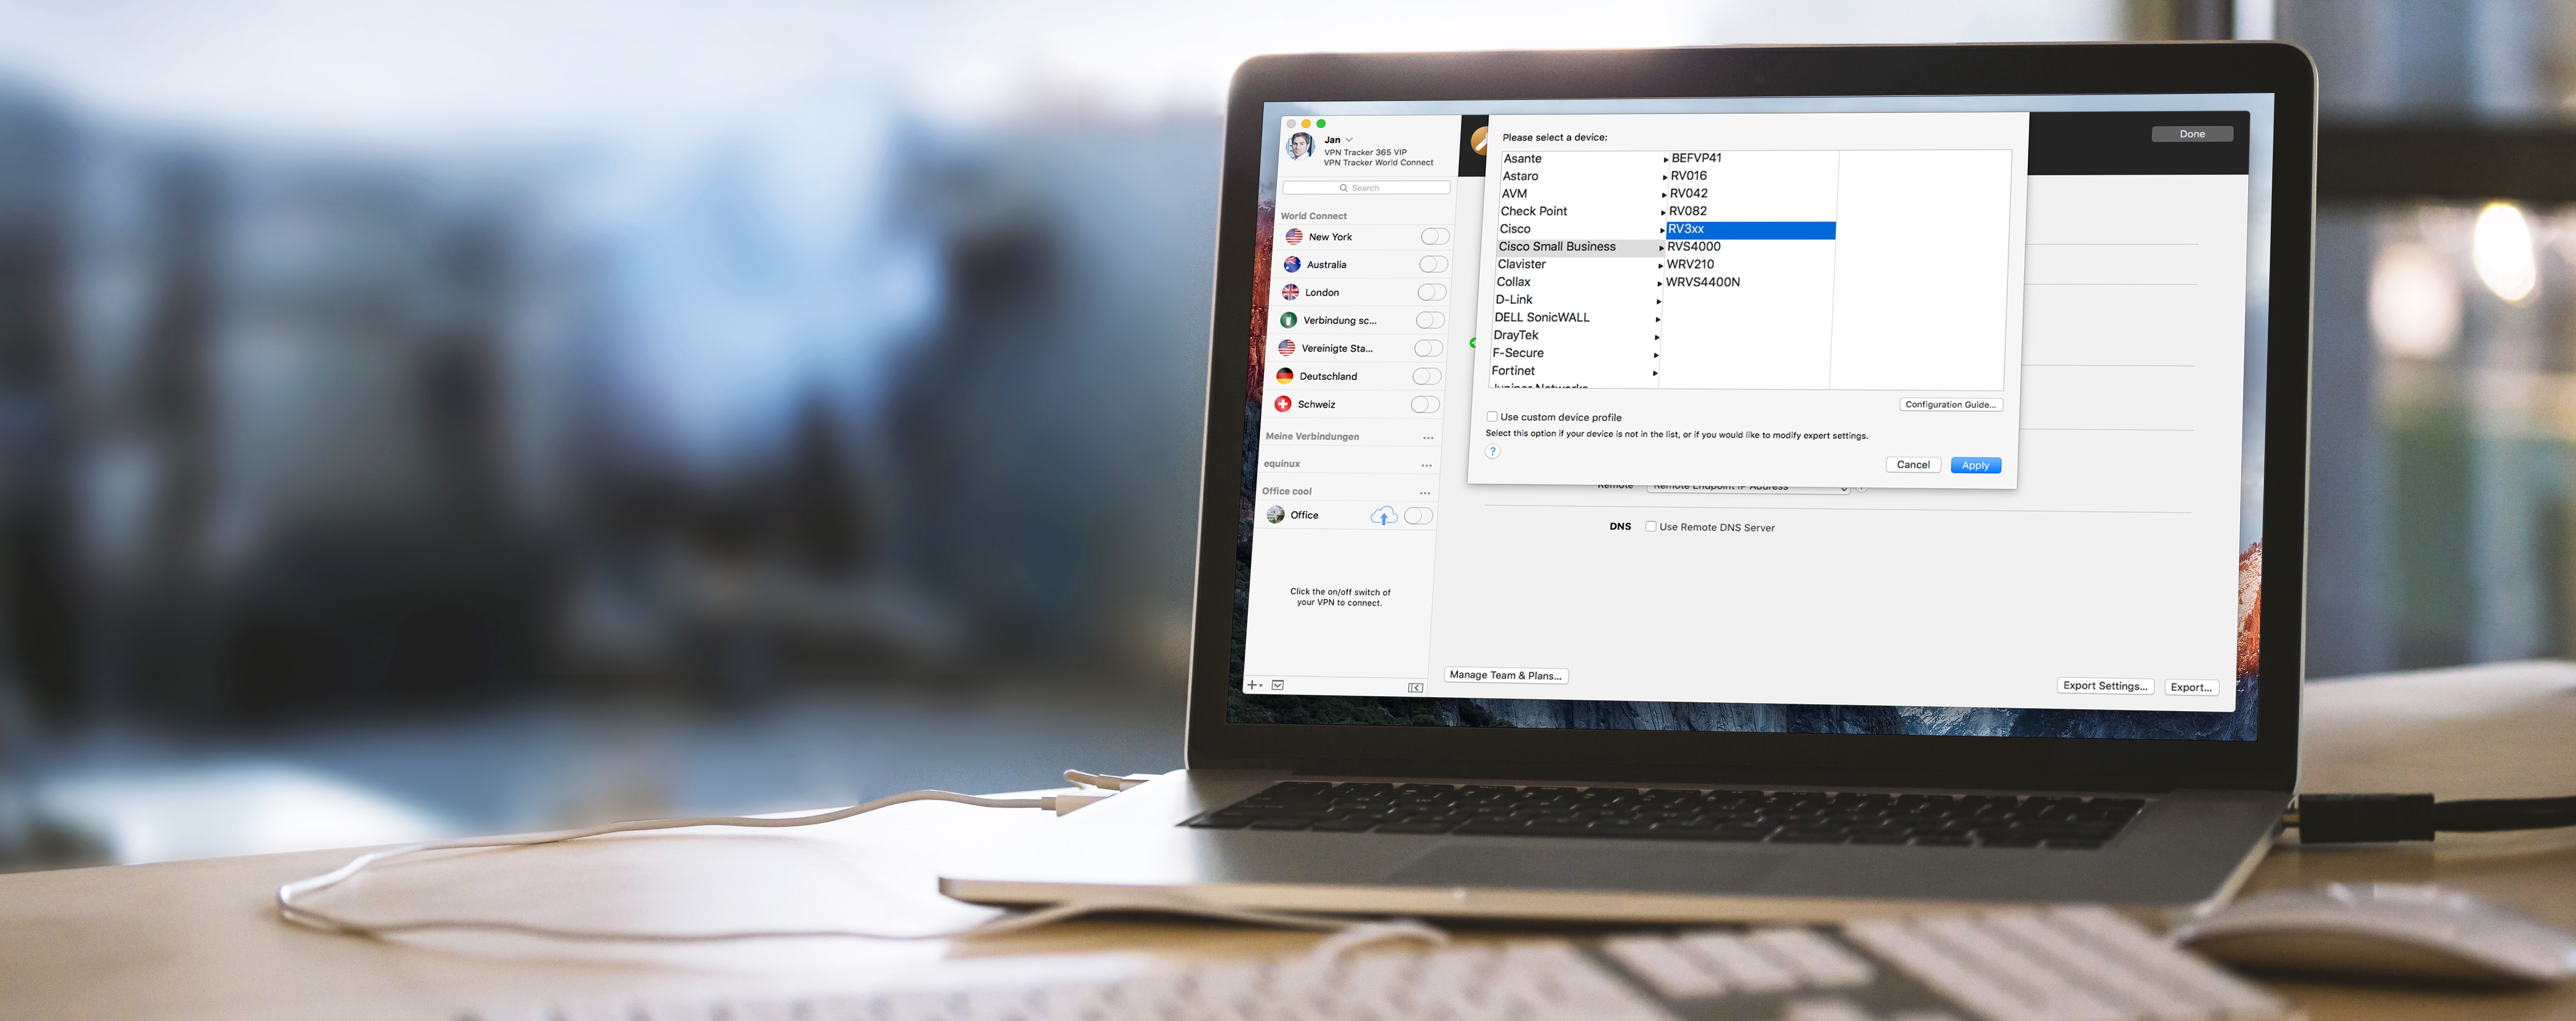 VPN Tracker 365 is ready for macOS Sierra